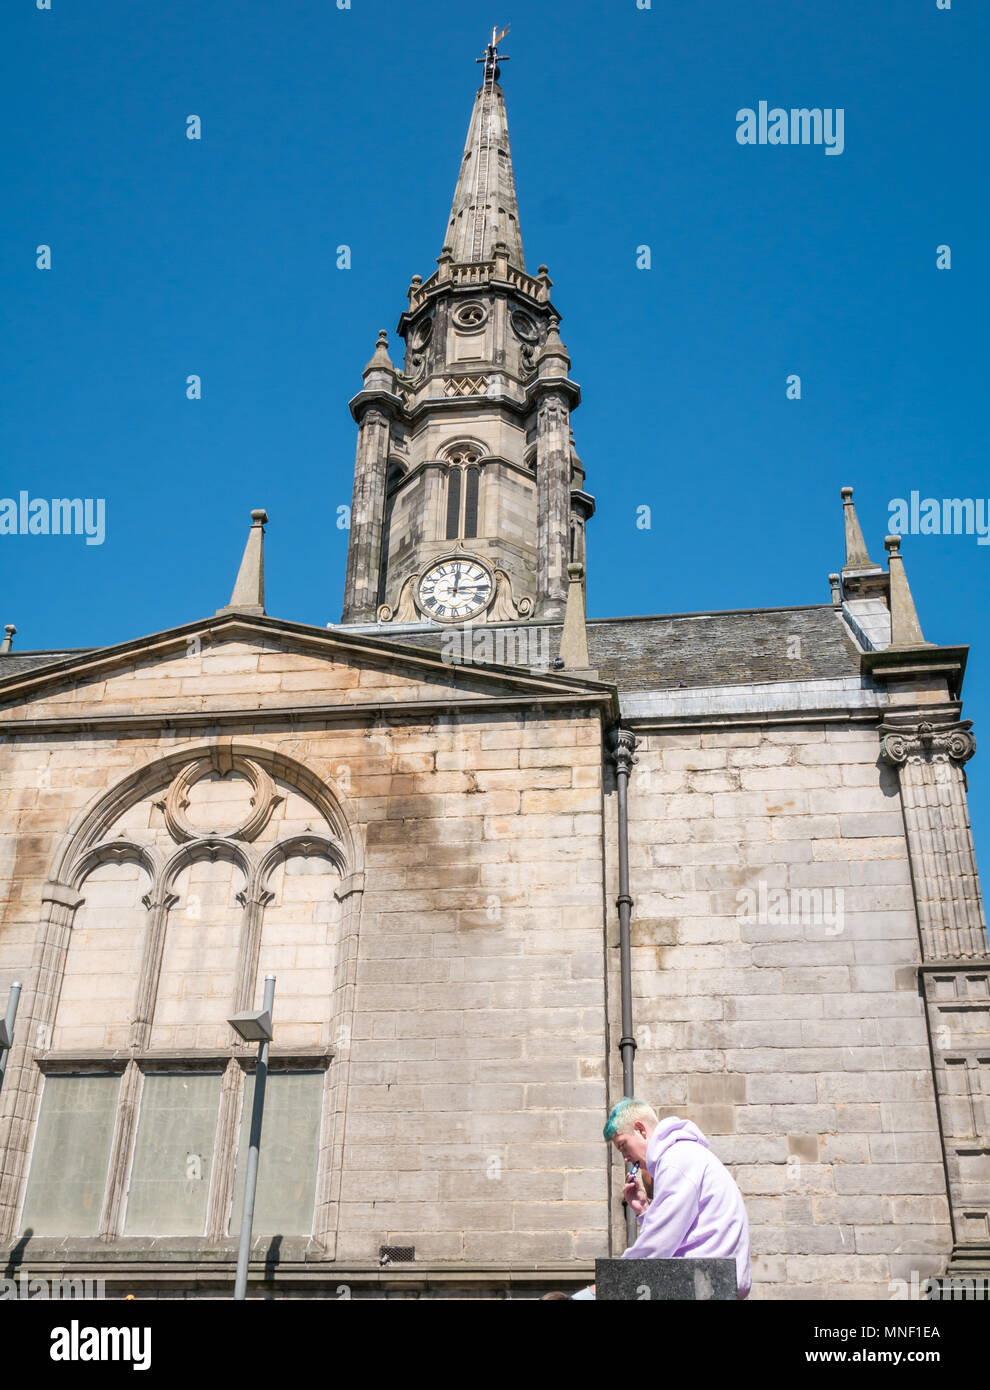 Junger Mann außerhalb Tron Kirk, Jäger Platz sitzen, mit Hilfe einer E-Zigarette mit Turm gegen den blauen Himmel, Edinburgh, Schottland, Großbritannien Stockfoto